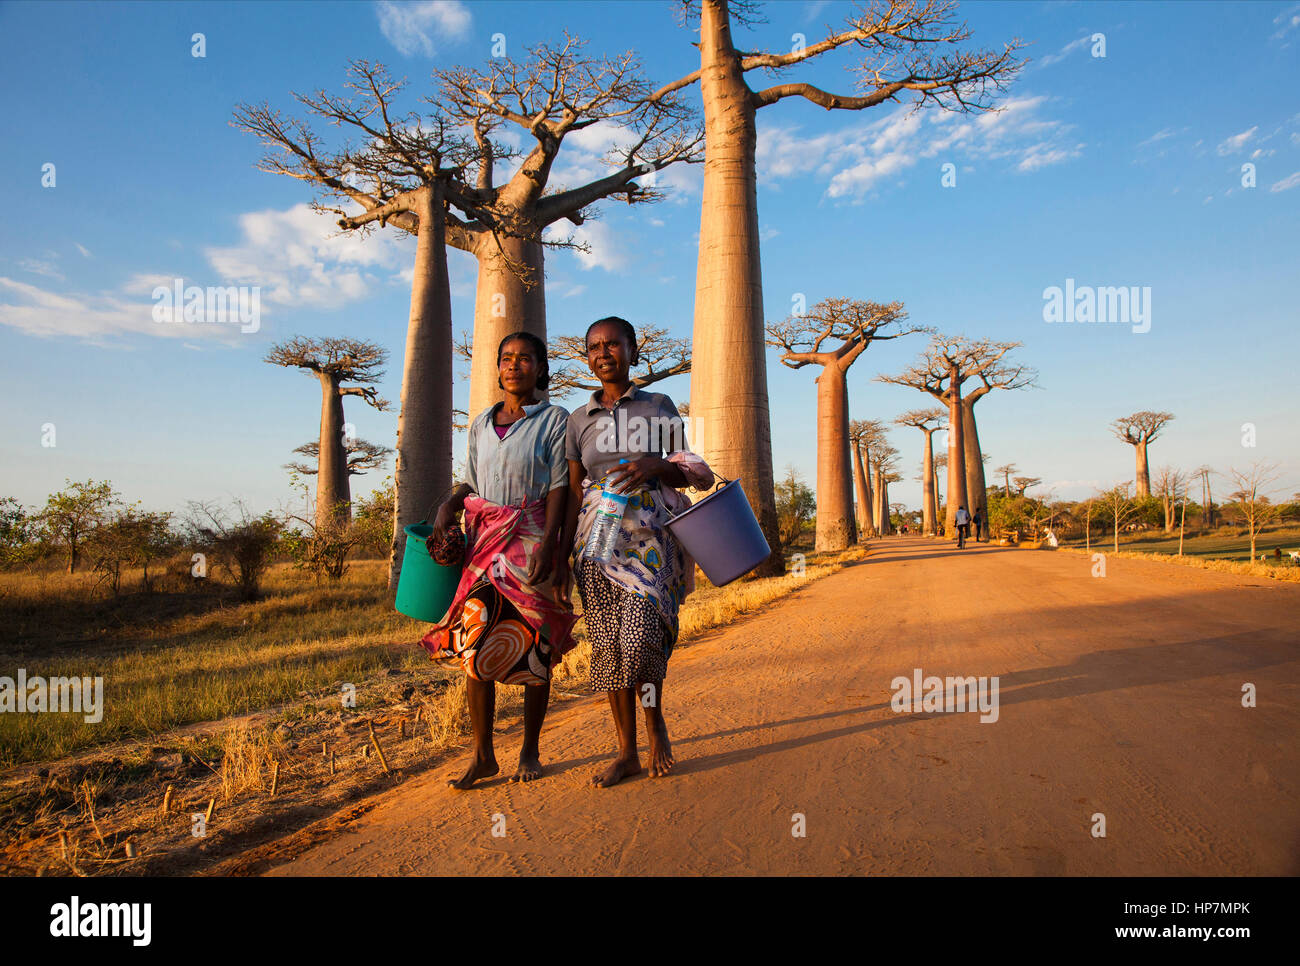 Madagassische Frauen an der Allee der Baobabs, Morondava, Baobab Allee, Adansonia grandidieri, westlichen Madagaskar, von Monika Hrdinova/Dembinsky Foto Assoc Stockfoto